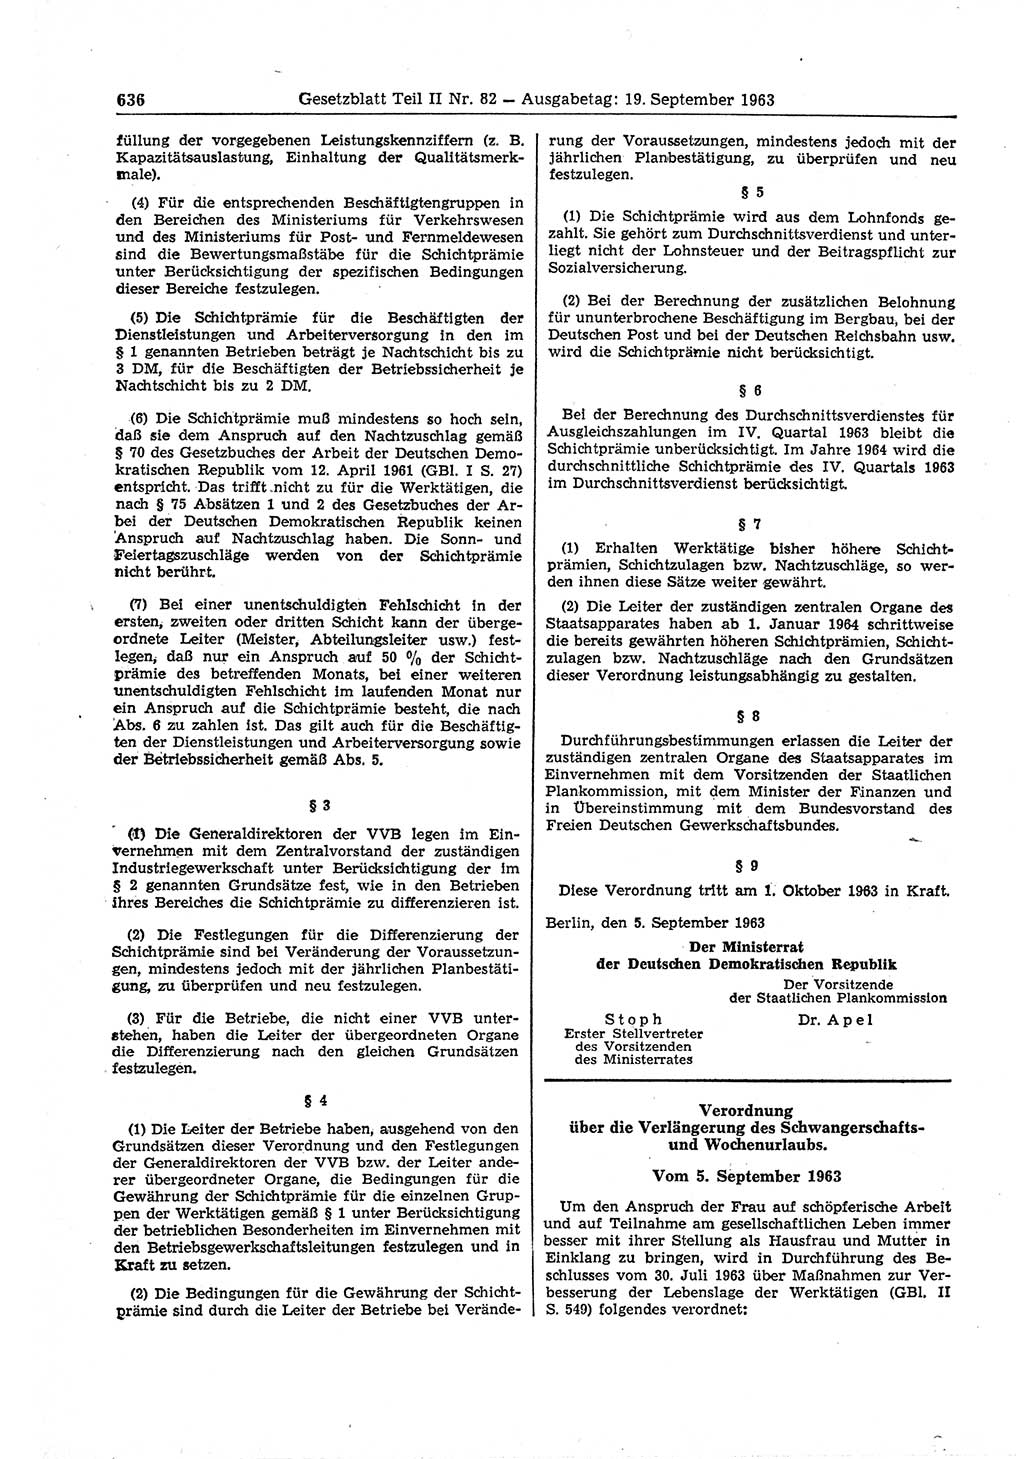 Gesetzblatt (GBl.) der Deutschen Demokratischen Republik (DDR) Teil ⅠⅠ 1963, Seite 636 (GBl. DDR ⅠⅠ 1963, S. 636)